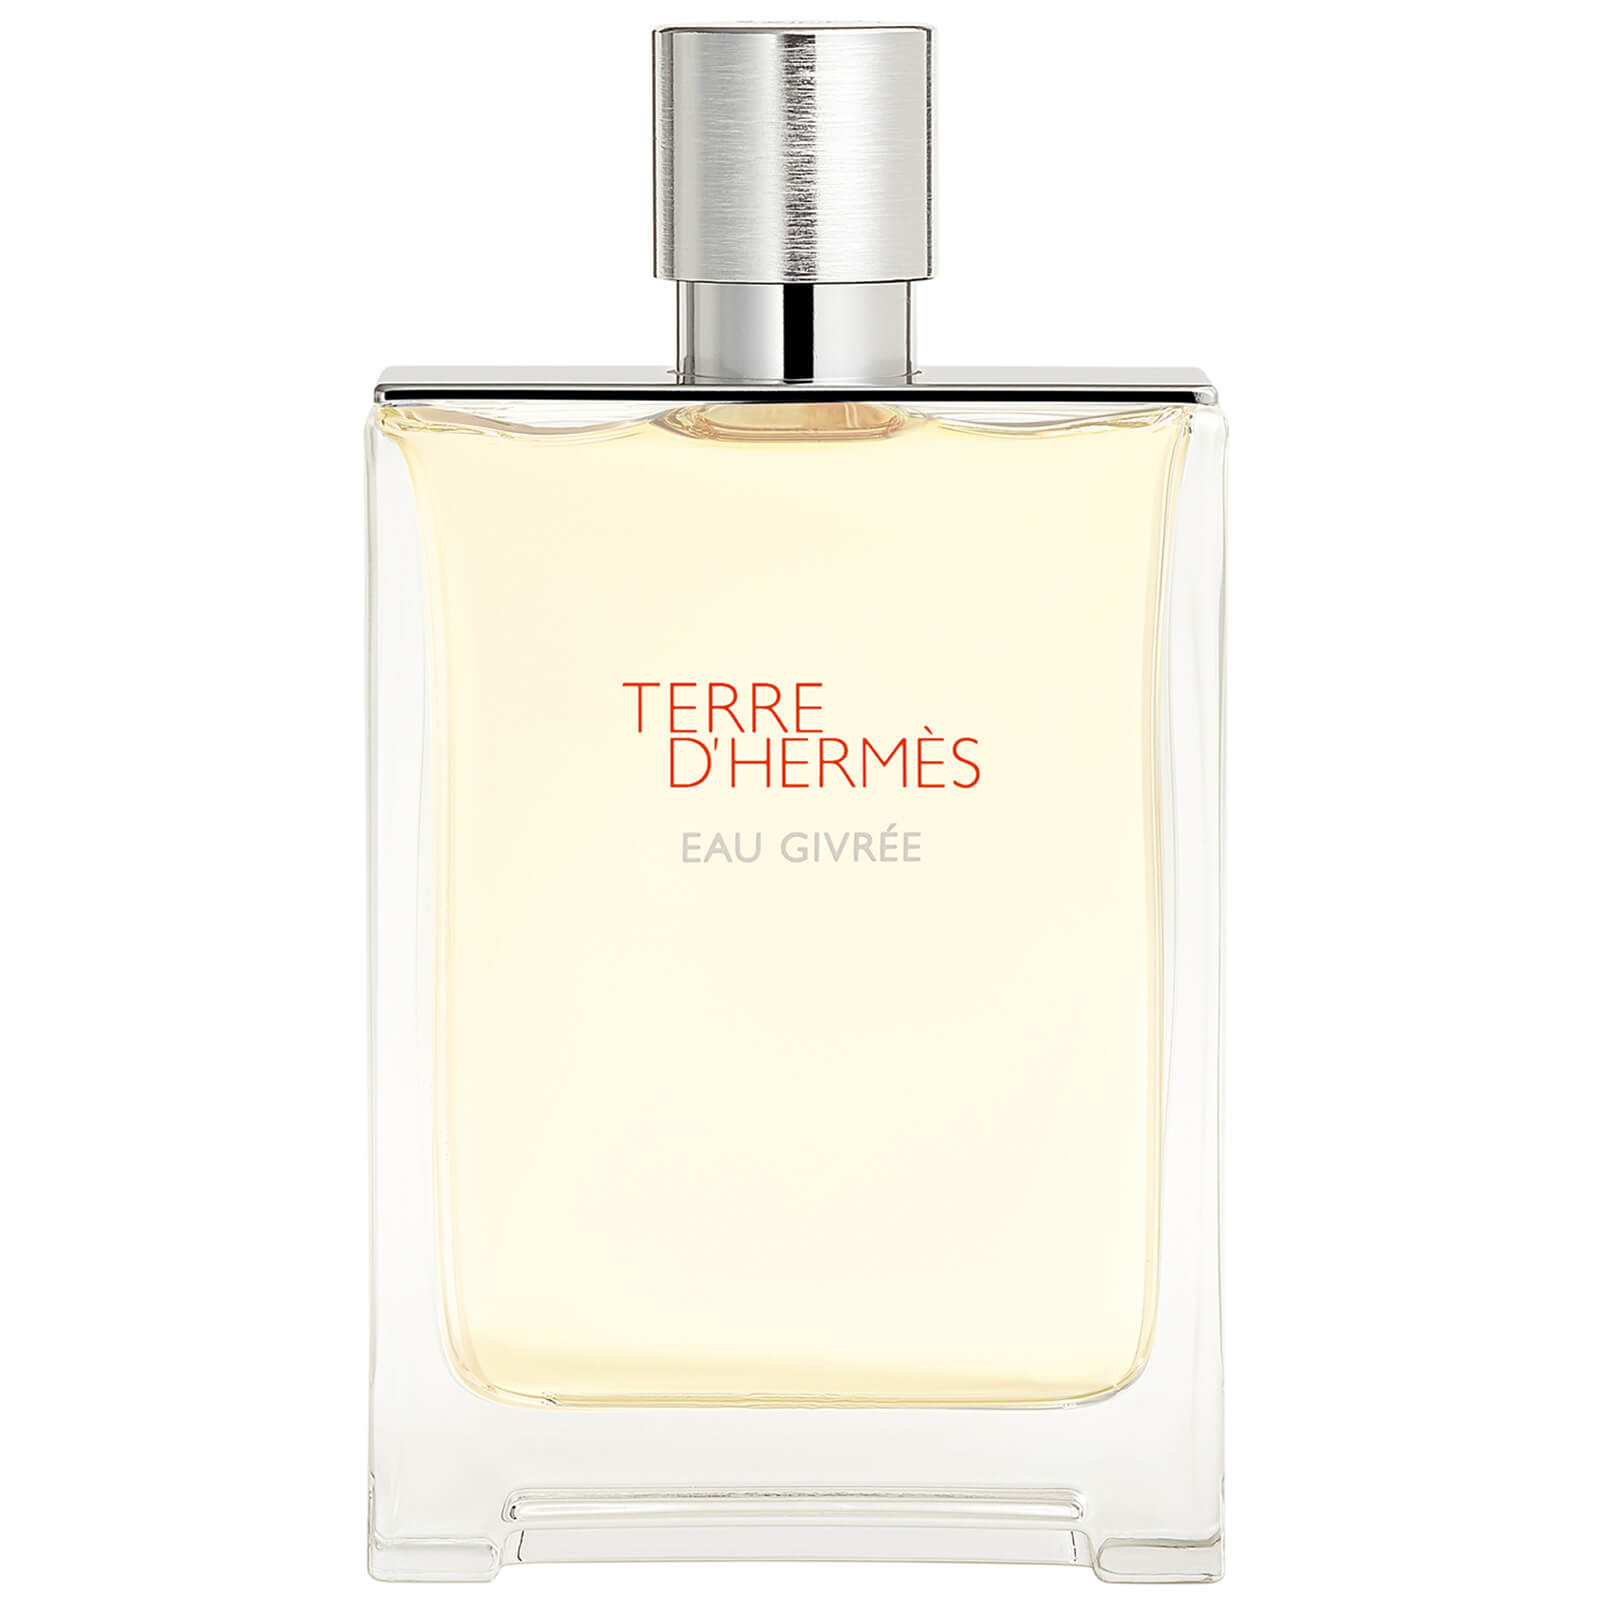 Hermes Terre d'Hermes Eau Givree Eau de Parfum 175ml